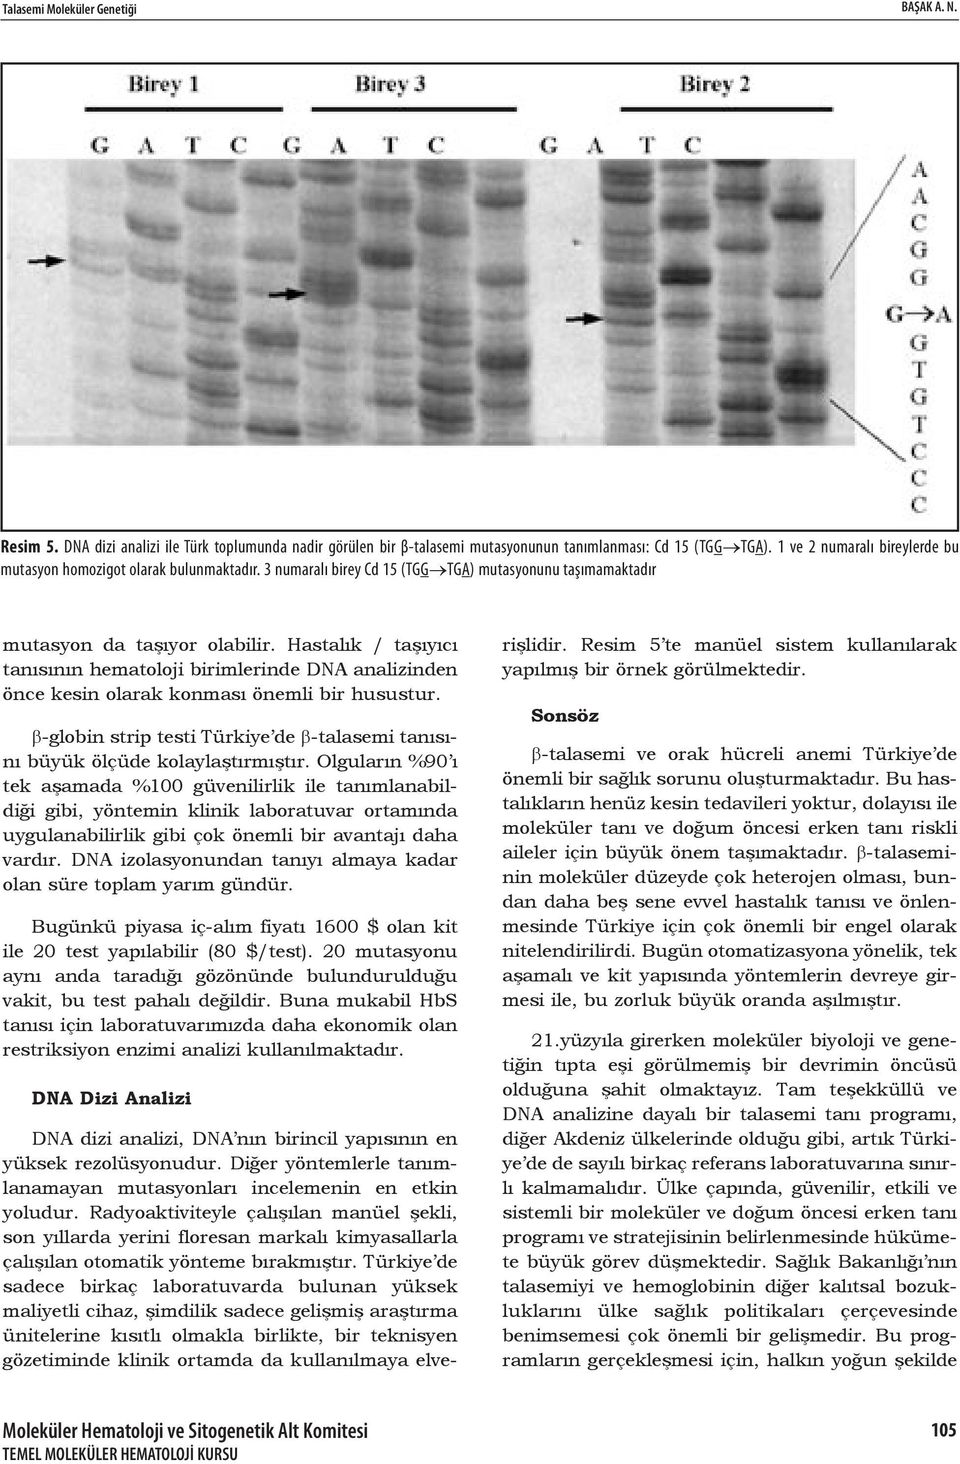 Hastalık / taşıyıcı tanısının hematoloji birimlerinde DNA analizinden önce kesin olarak konması önemli bir husustur. β-globin strip testi Türkiye de β-talasemi tanısını büyük ölçüde kolaylaştırmıştır.